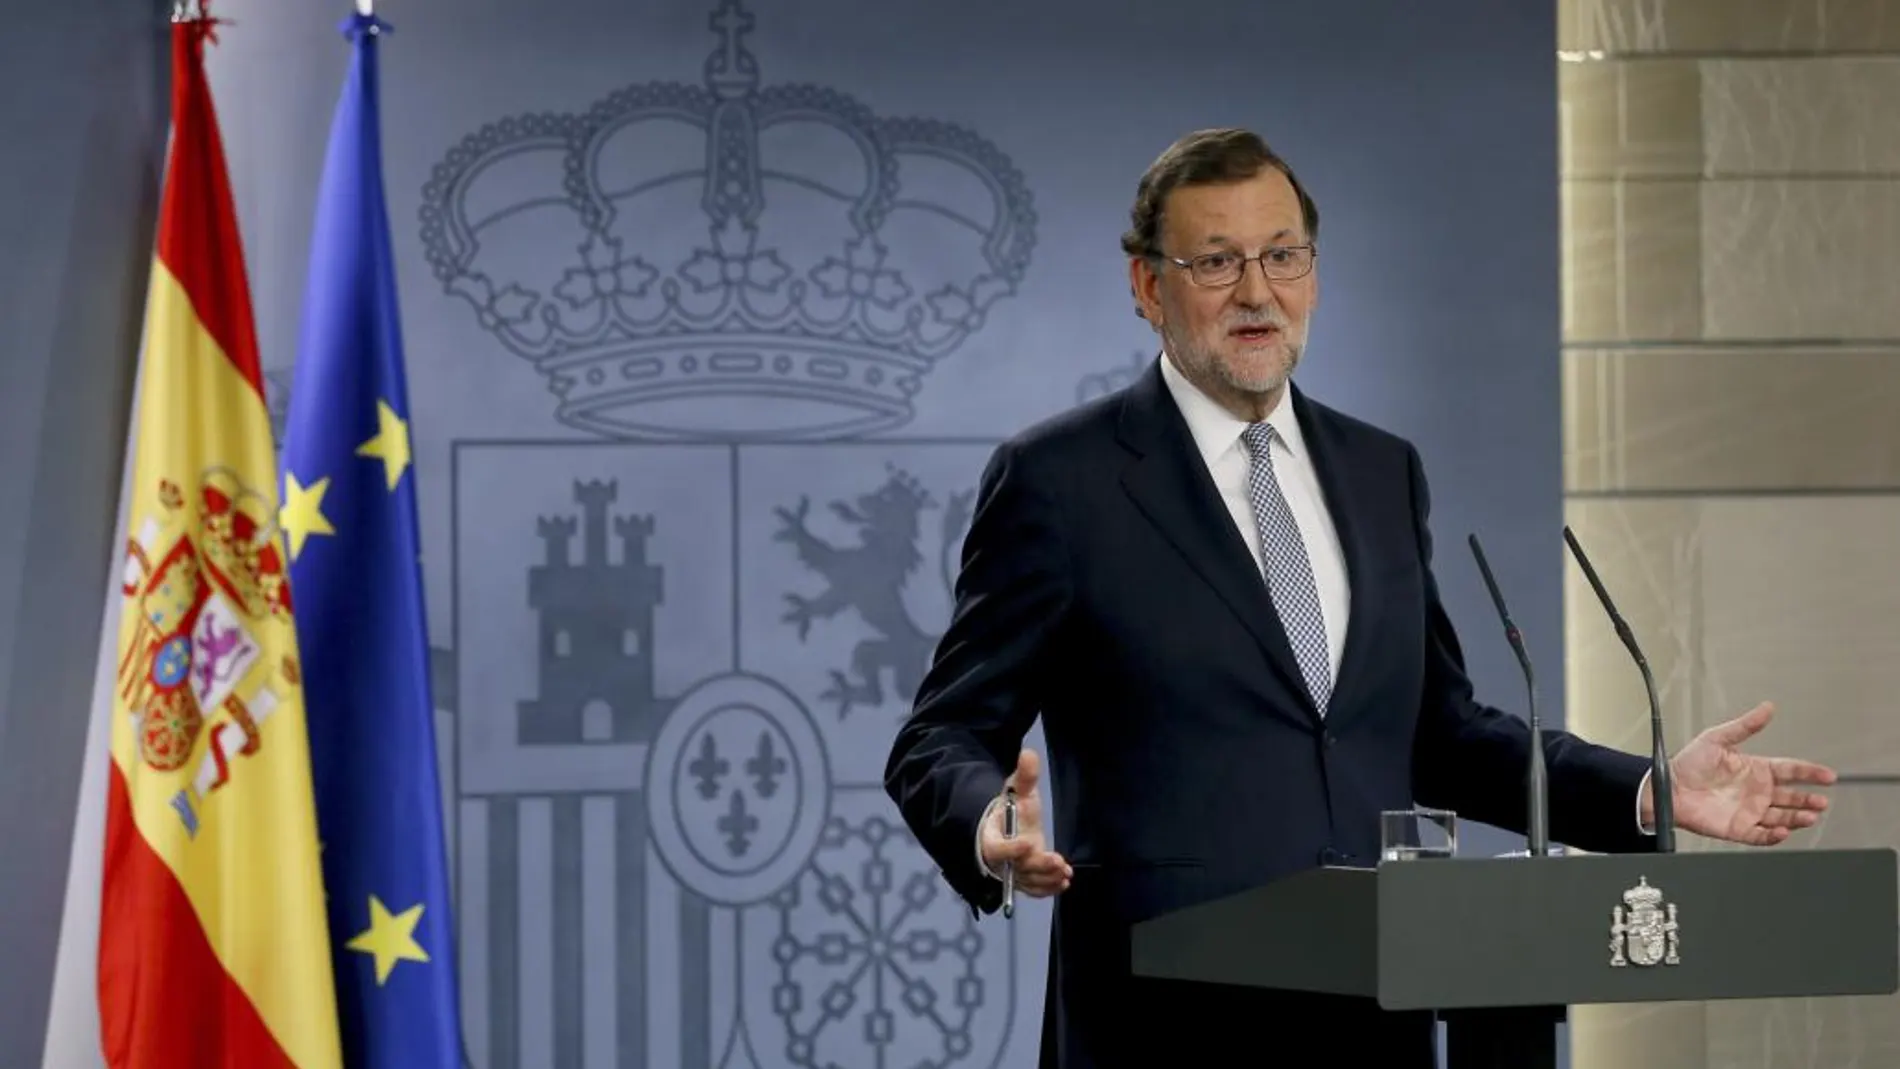 El presidente del Gobierno en funciones, Mariano Rajoy, durante la rueda de prensa que ofreció ayer en el Palacio de la Moncloa de Madrid, tras la reunión que ha mantenido con el Rey